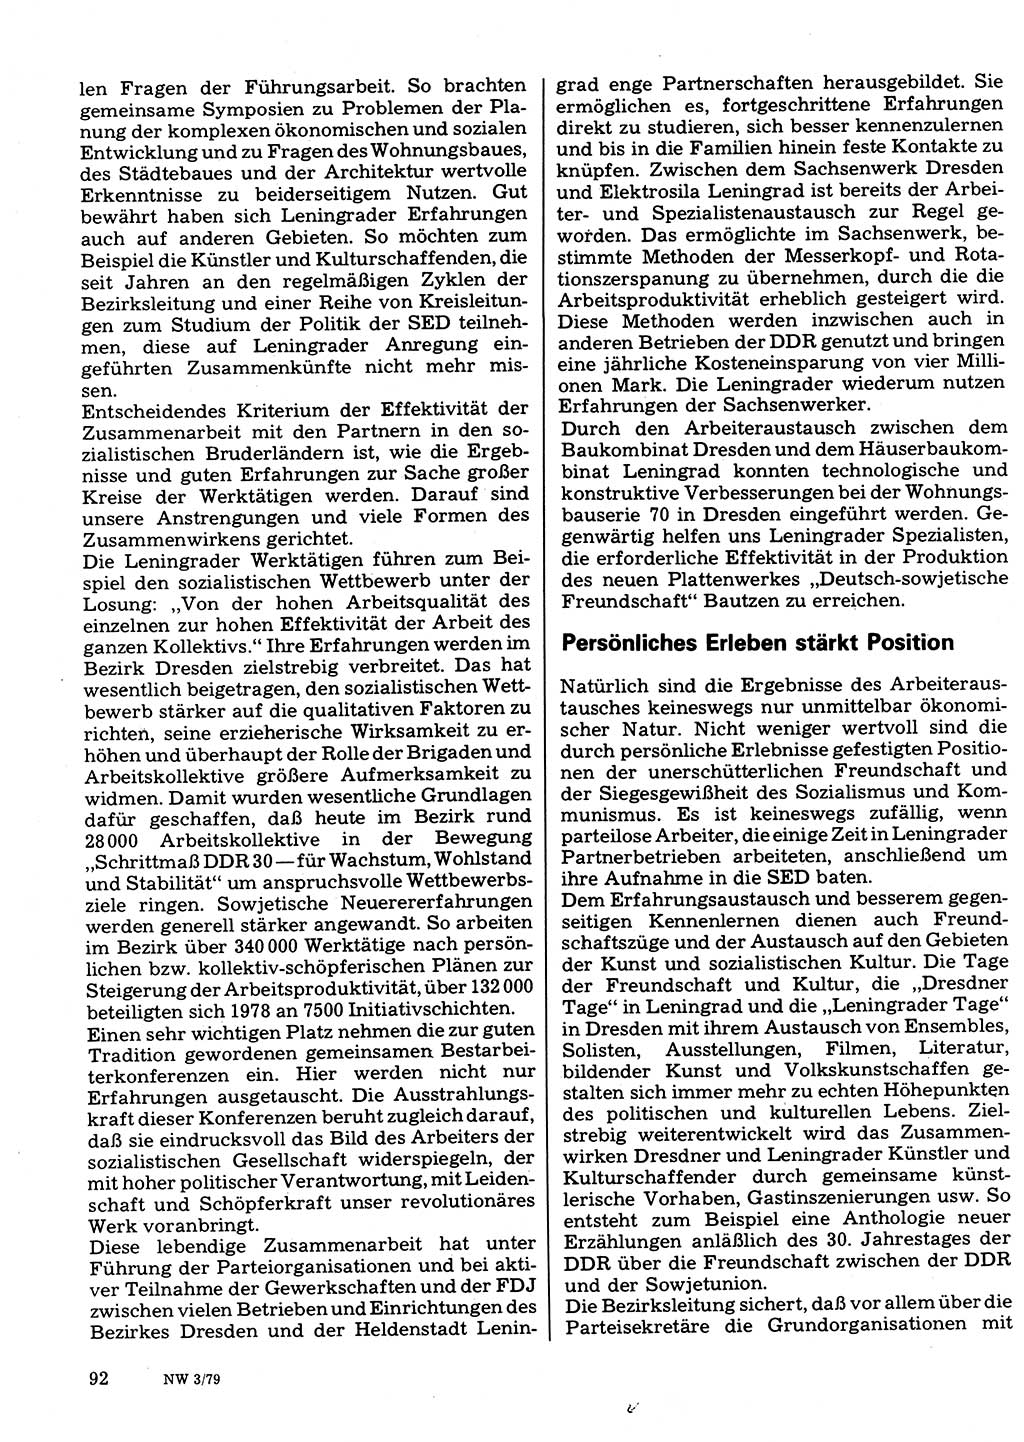 Neuer Weg (NW), Organ des Zentralkomitees (ZK) der SED (Sozialistische Einheitspartei Deutschlands) für Fragen des Parteilebens, 34. Jahrgang [Deutsche Demokratische Republik (DDR)] 1979, Seite 92 (NW ZK SED DDR 1979, S. 92)